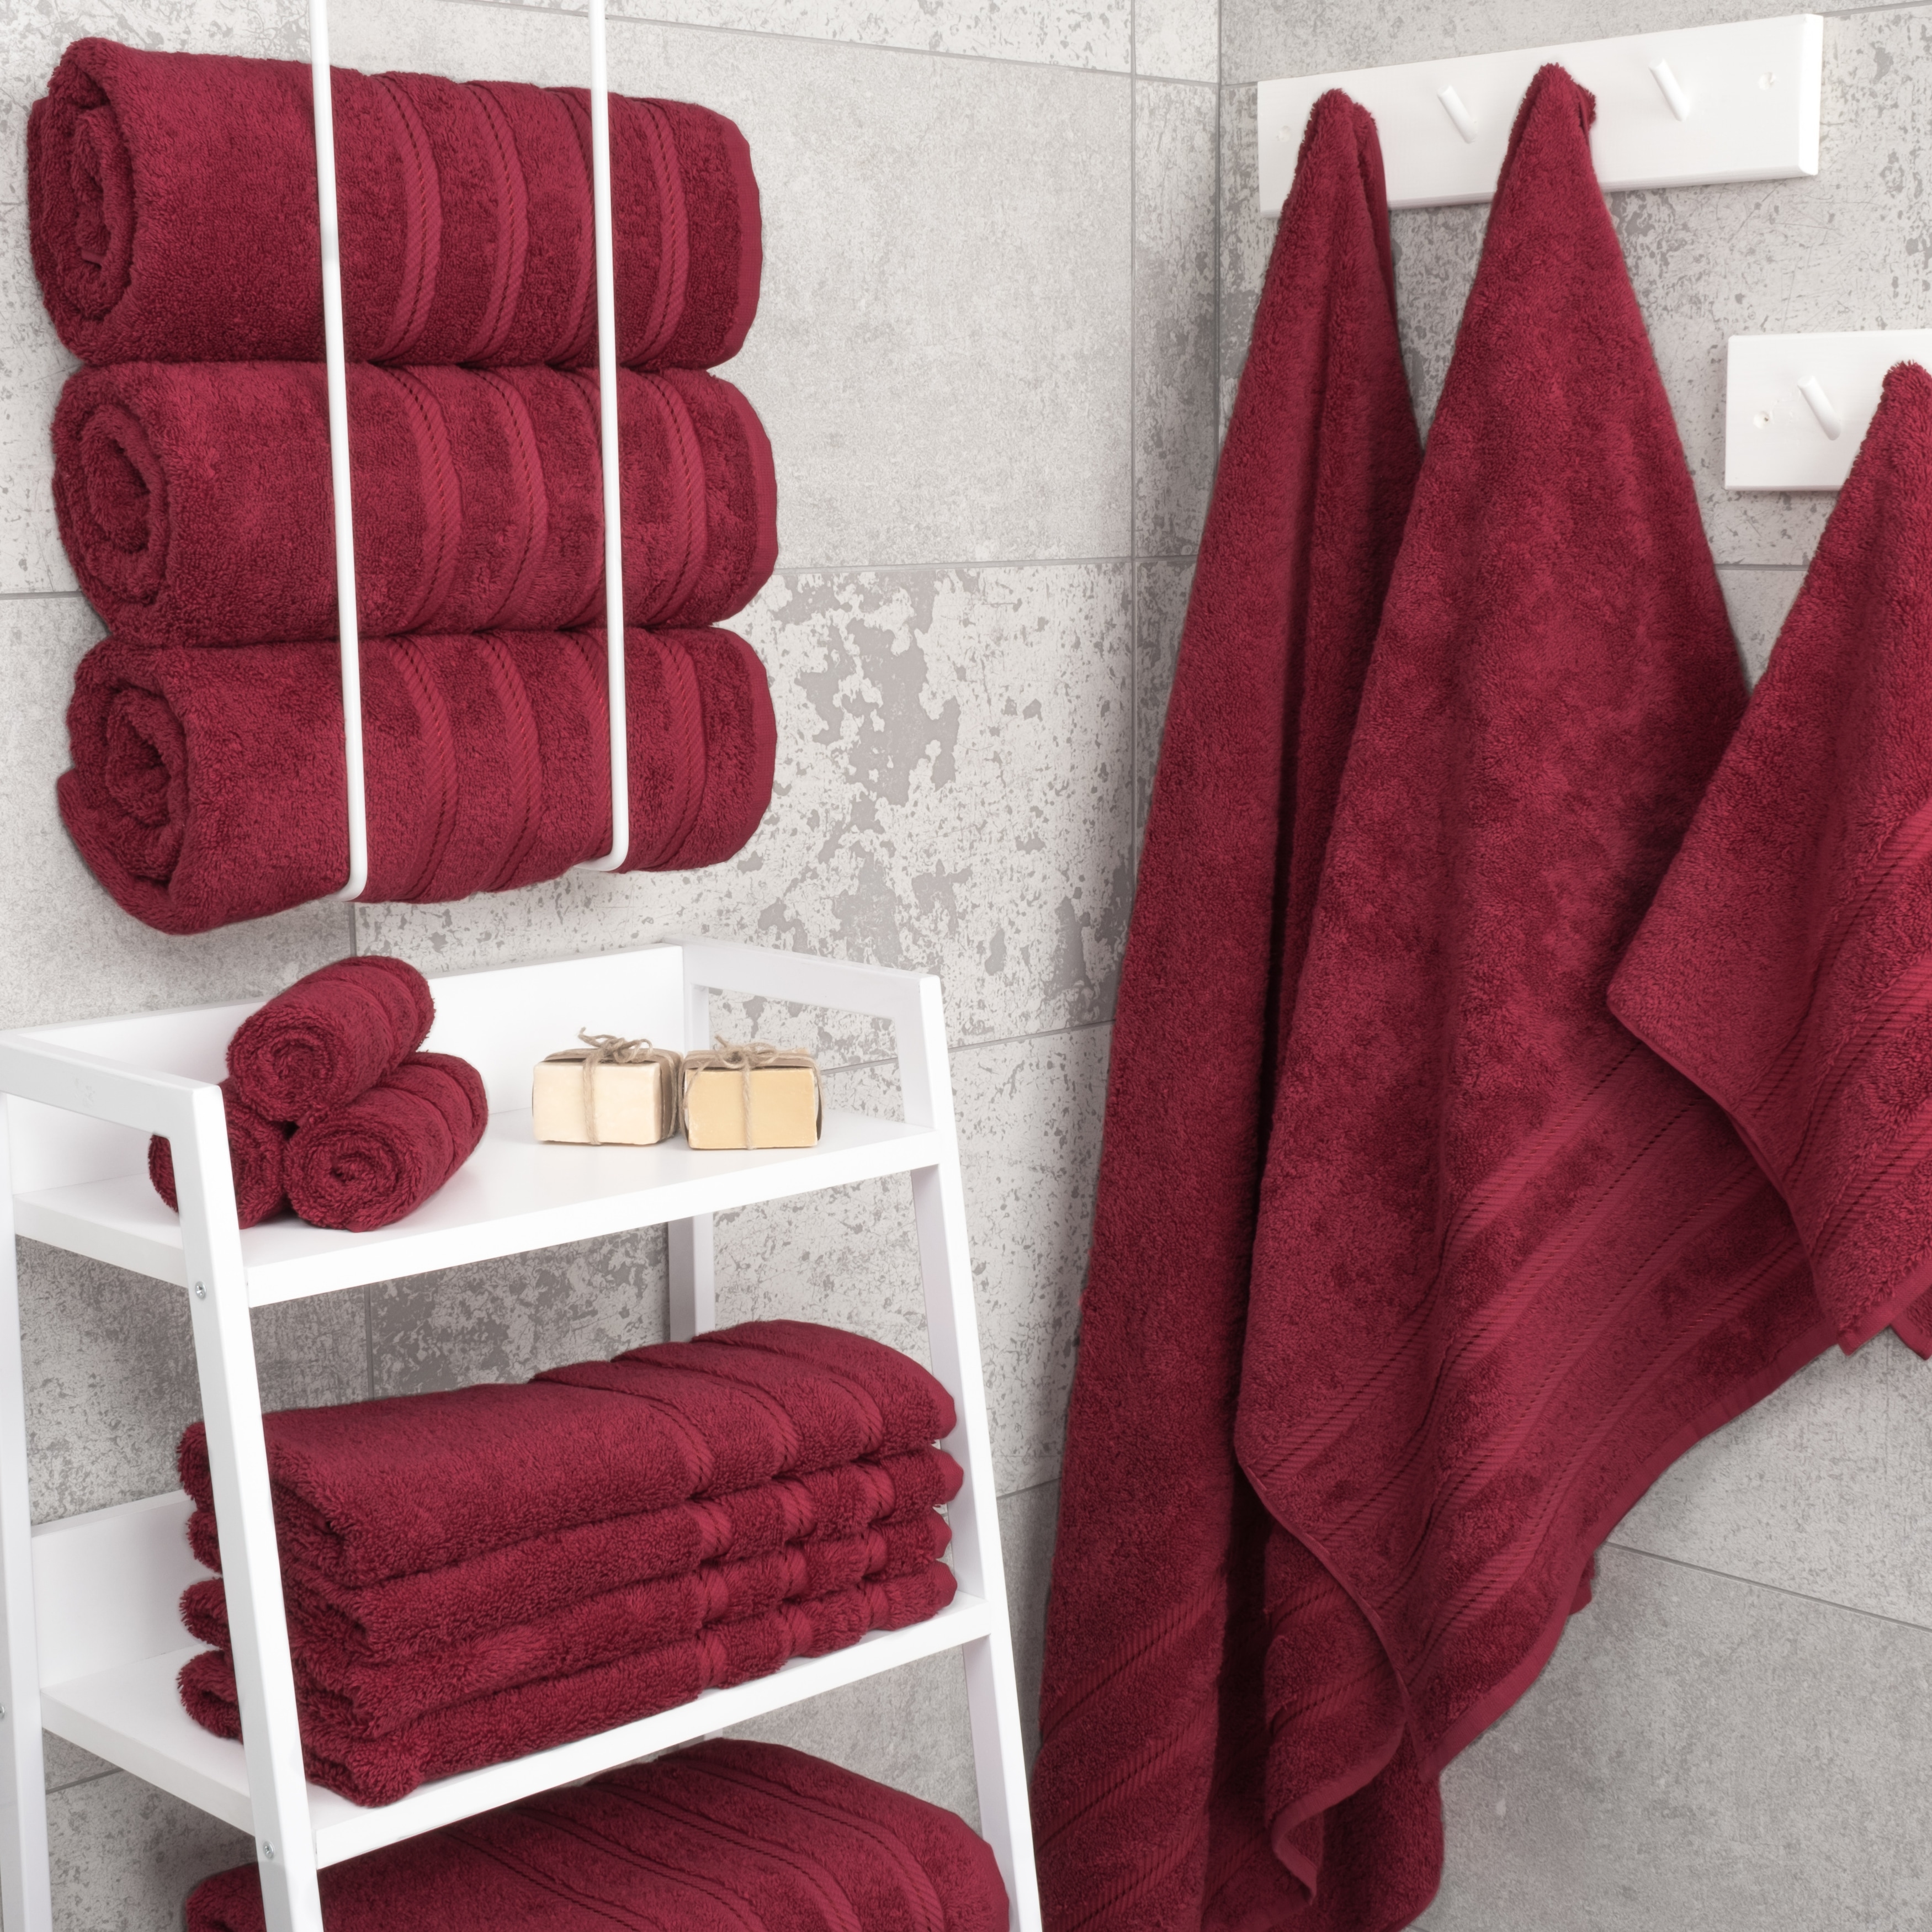 https://ak1.ostkcdn.com/images/products/is/images/direct/20b4d6e560a7ef3363d735d66668af6d13447529/American-Soft-Linen-Turkish-Cotton-4-Piece-Bath-Towel-Set.jpg